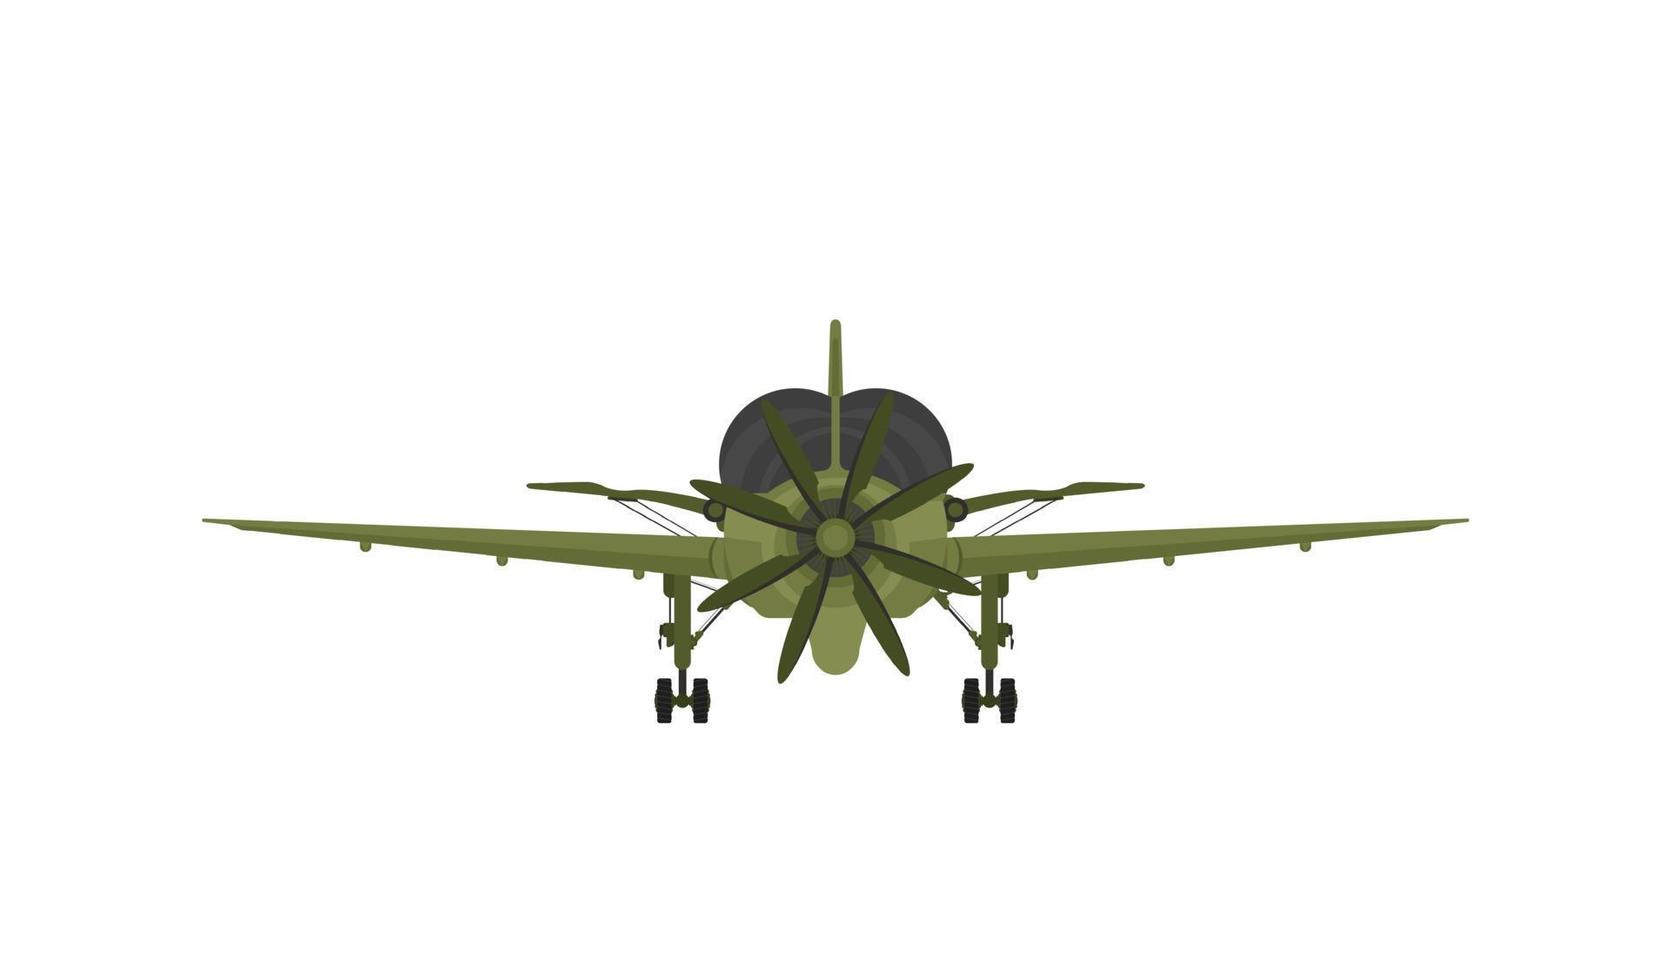 avion de chasse en vol, avion militaire, avion de l'armée isolé sur fond blanc, vue de face vecteur